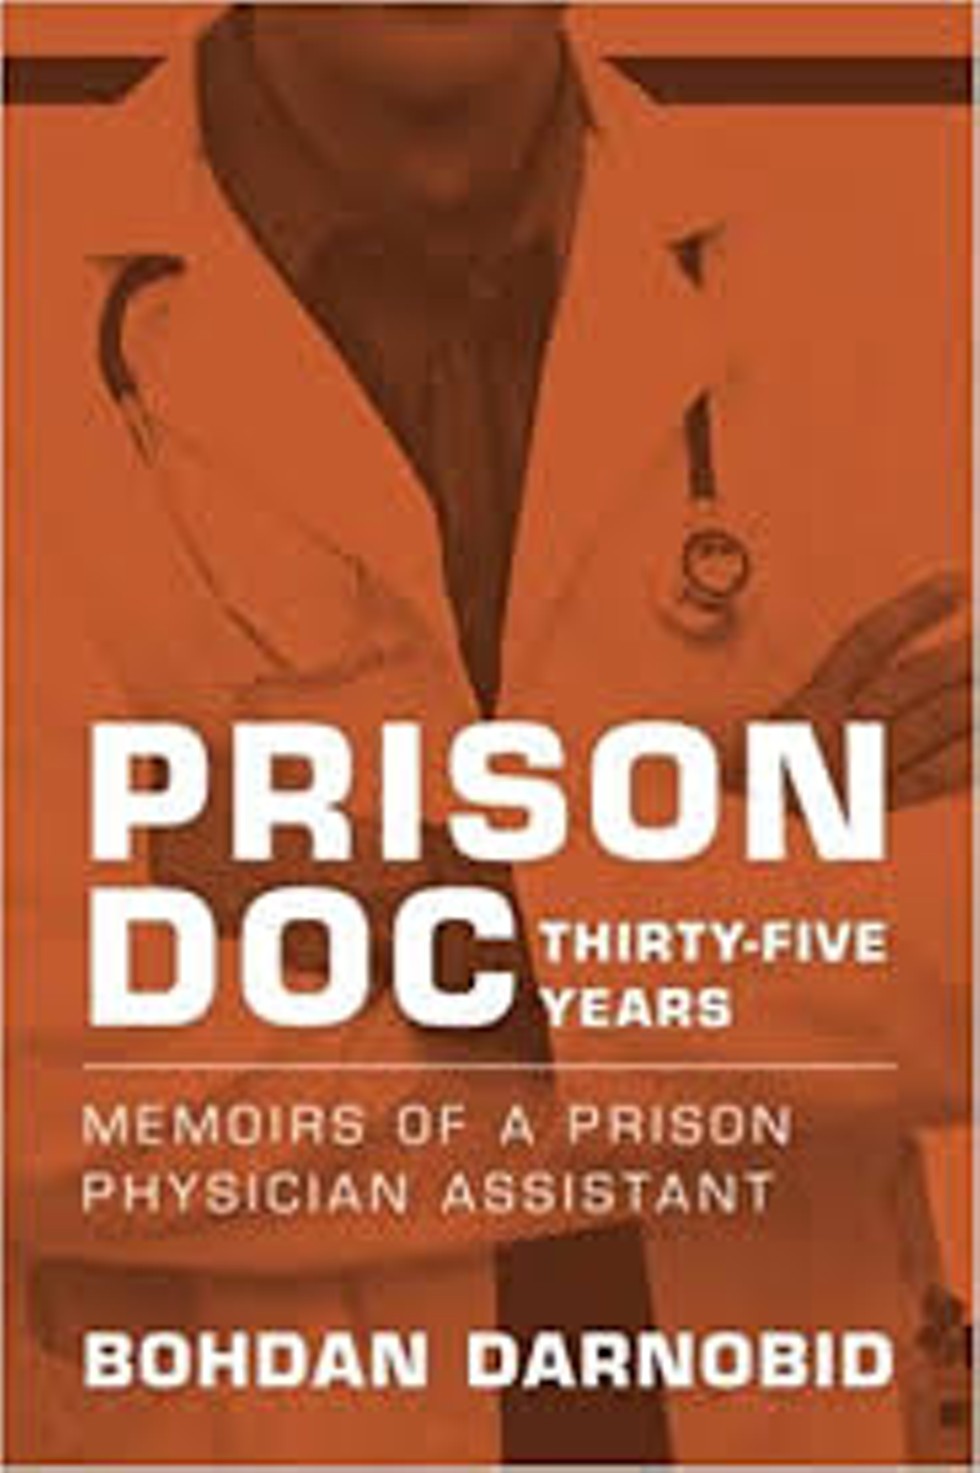 Cover image - "Prison Doc,"